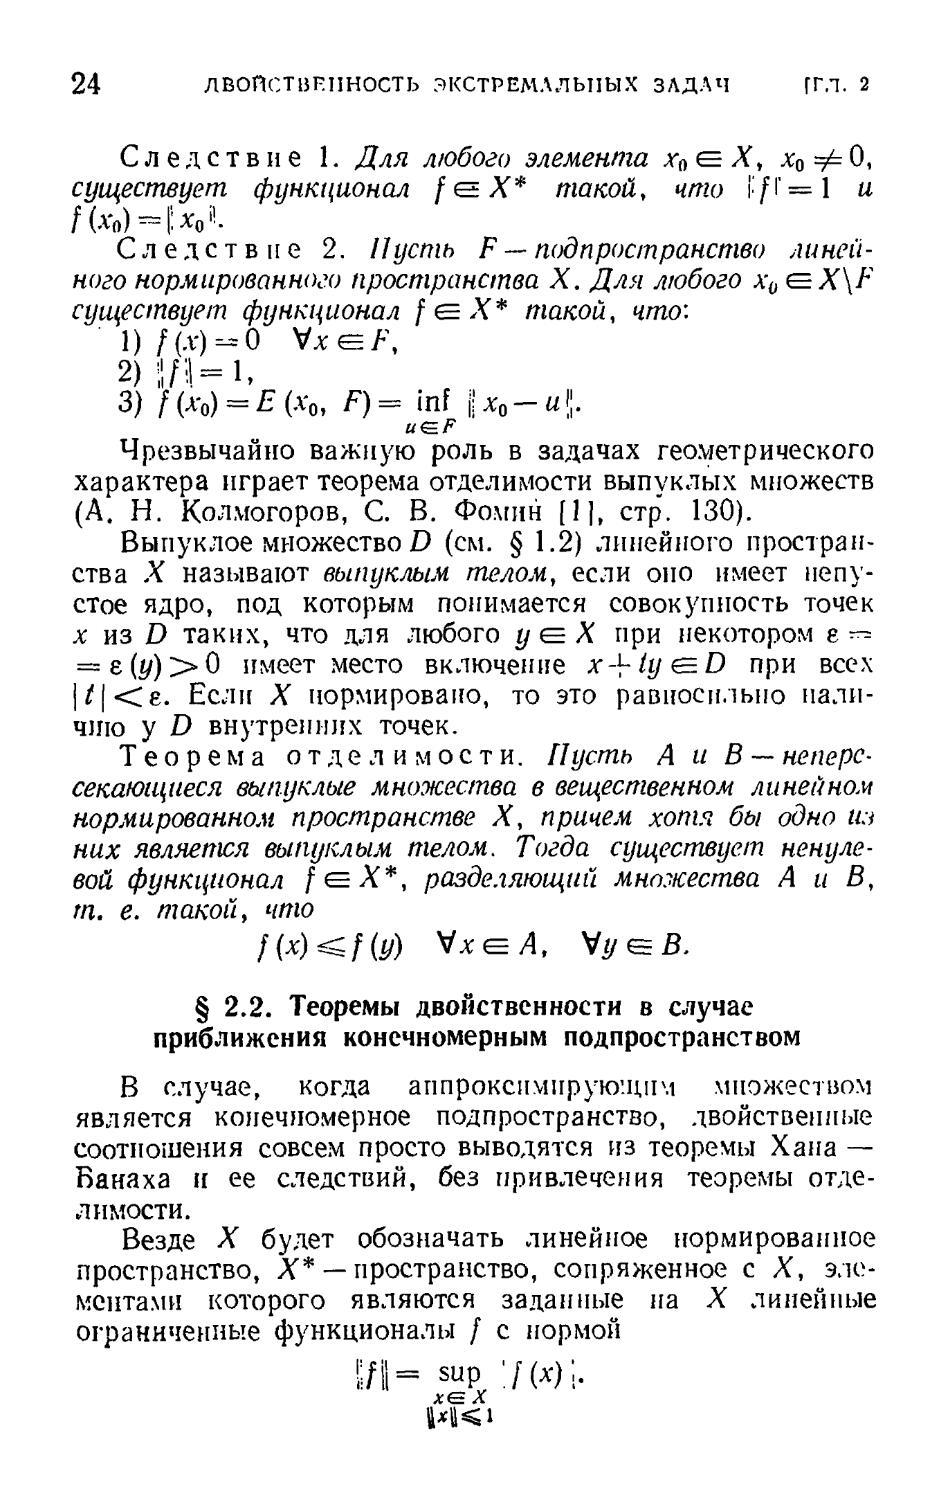 § 2.2. Теоремы двойственности в случае приближения конечномерным подпространством